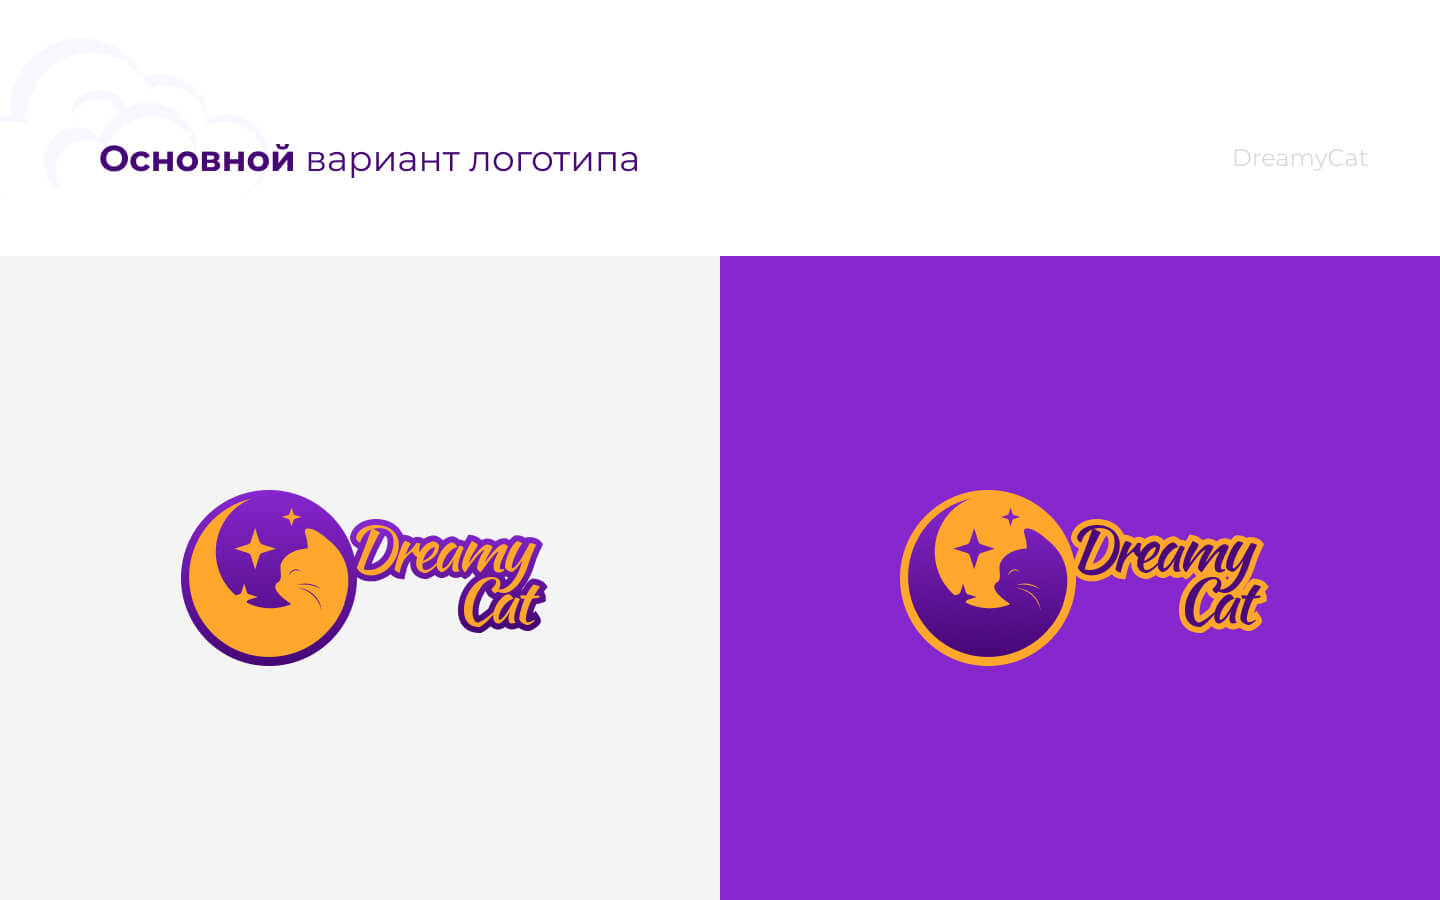 DreamyCat_logo_03